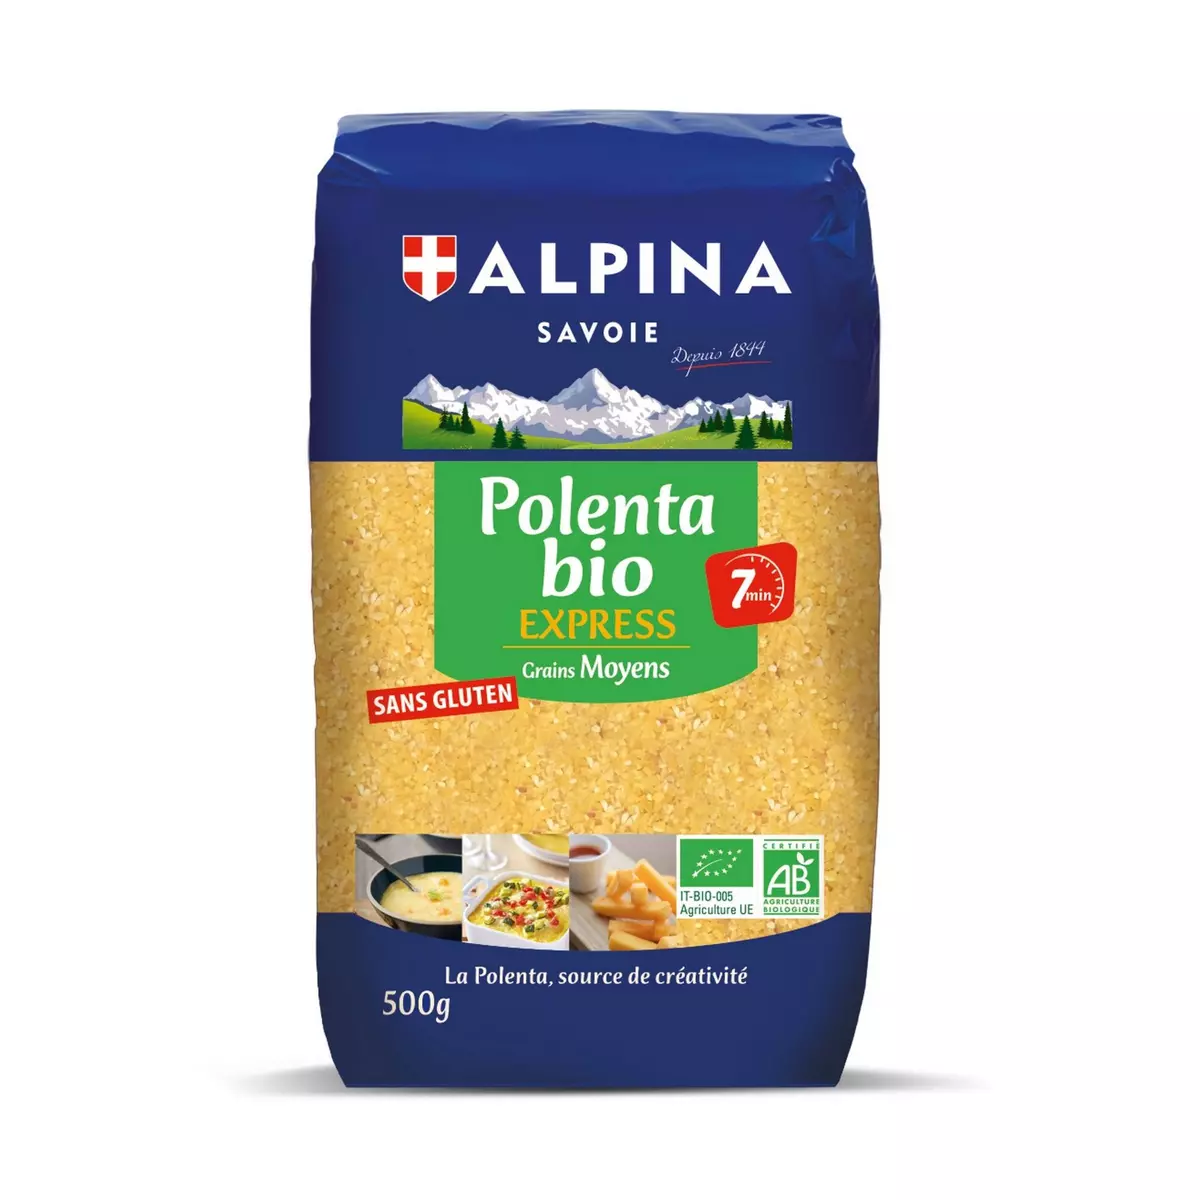 ALPINA SAVOIE Polenta bio express grains moyens sans gluten 500g